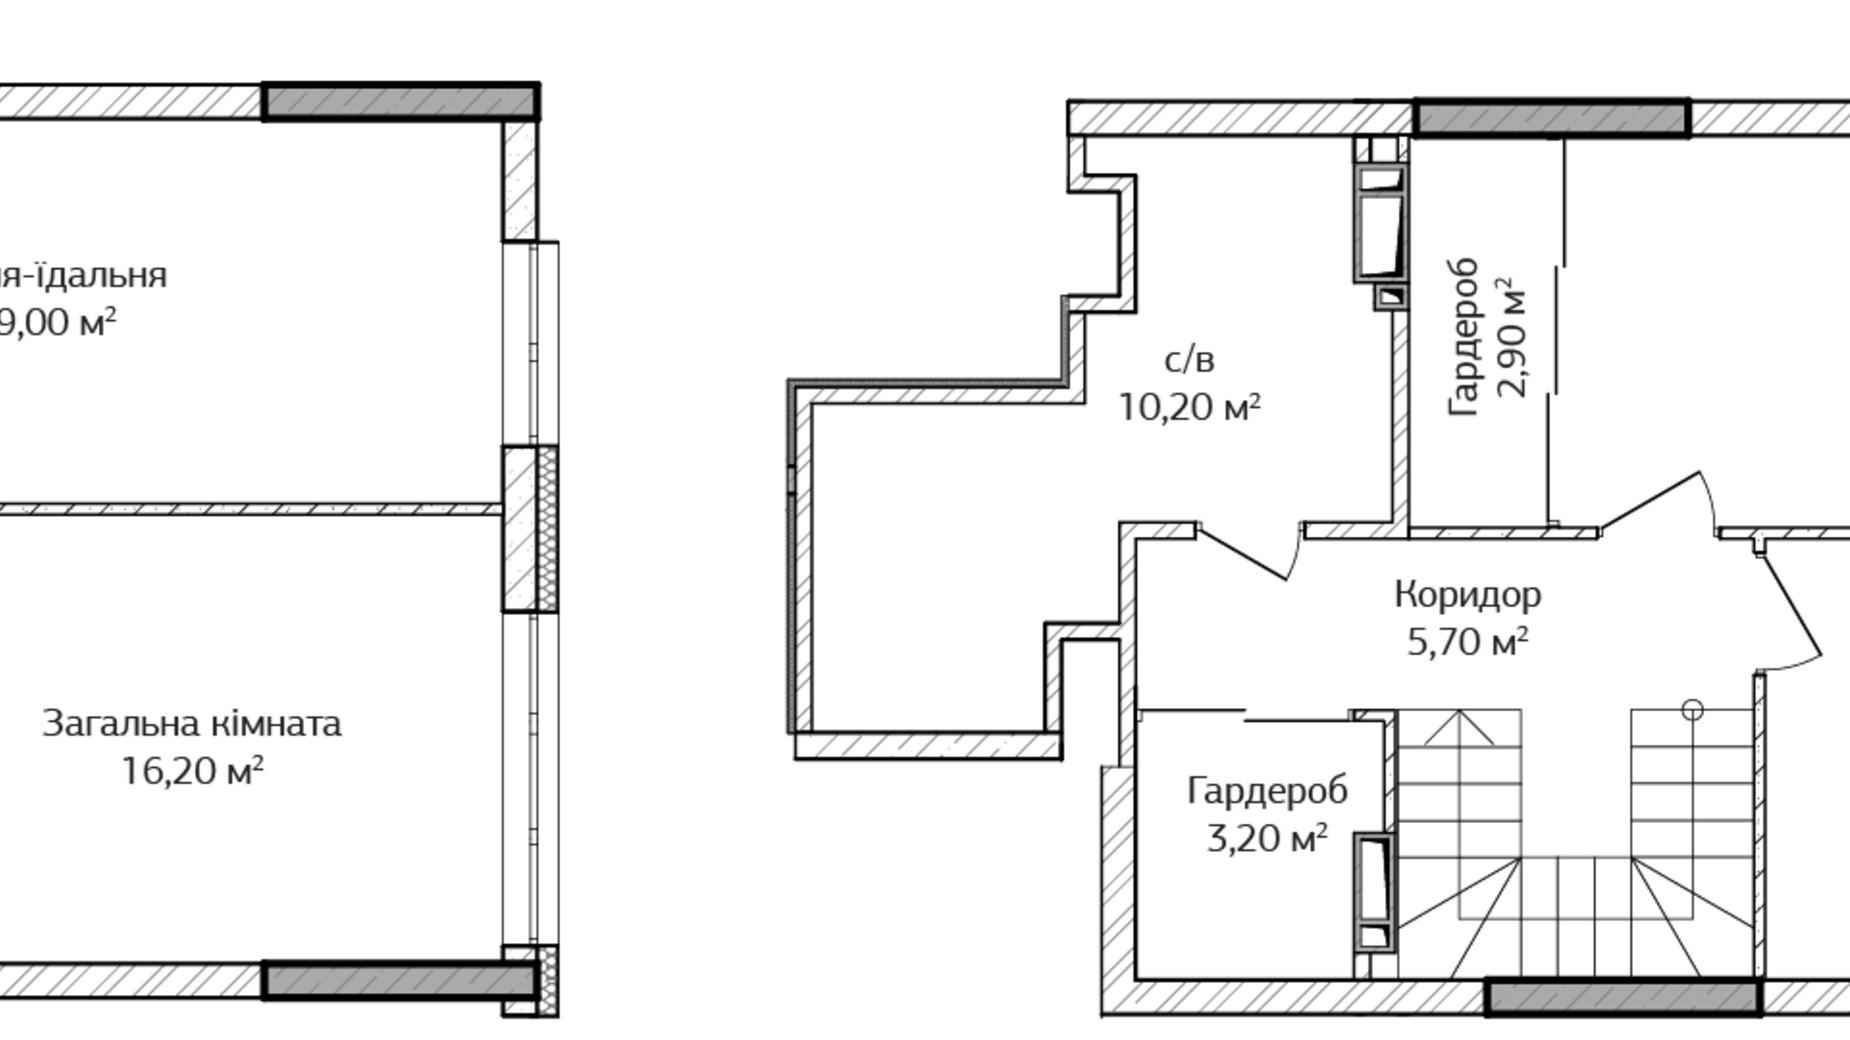 Планировка много­уровневой квартиры в ЖК City Park 2 103.8 м², фото 499365